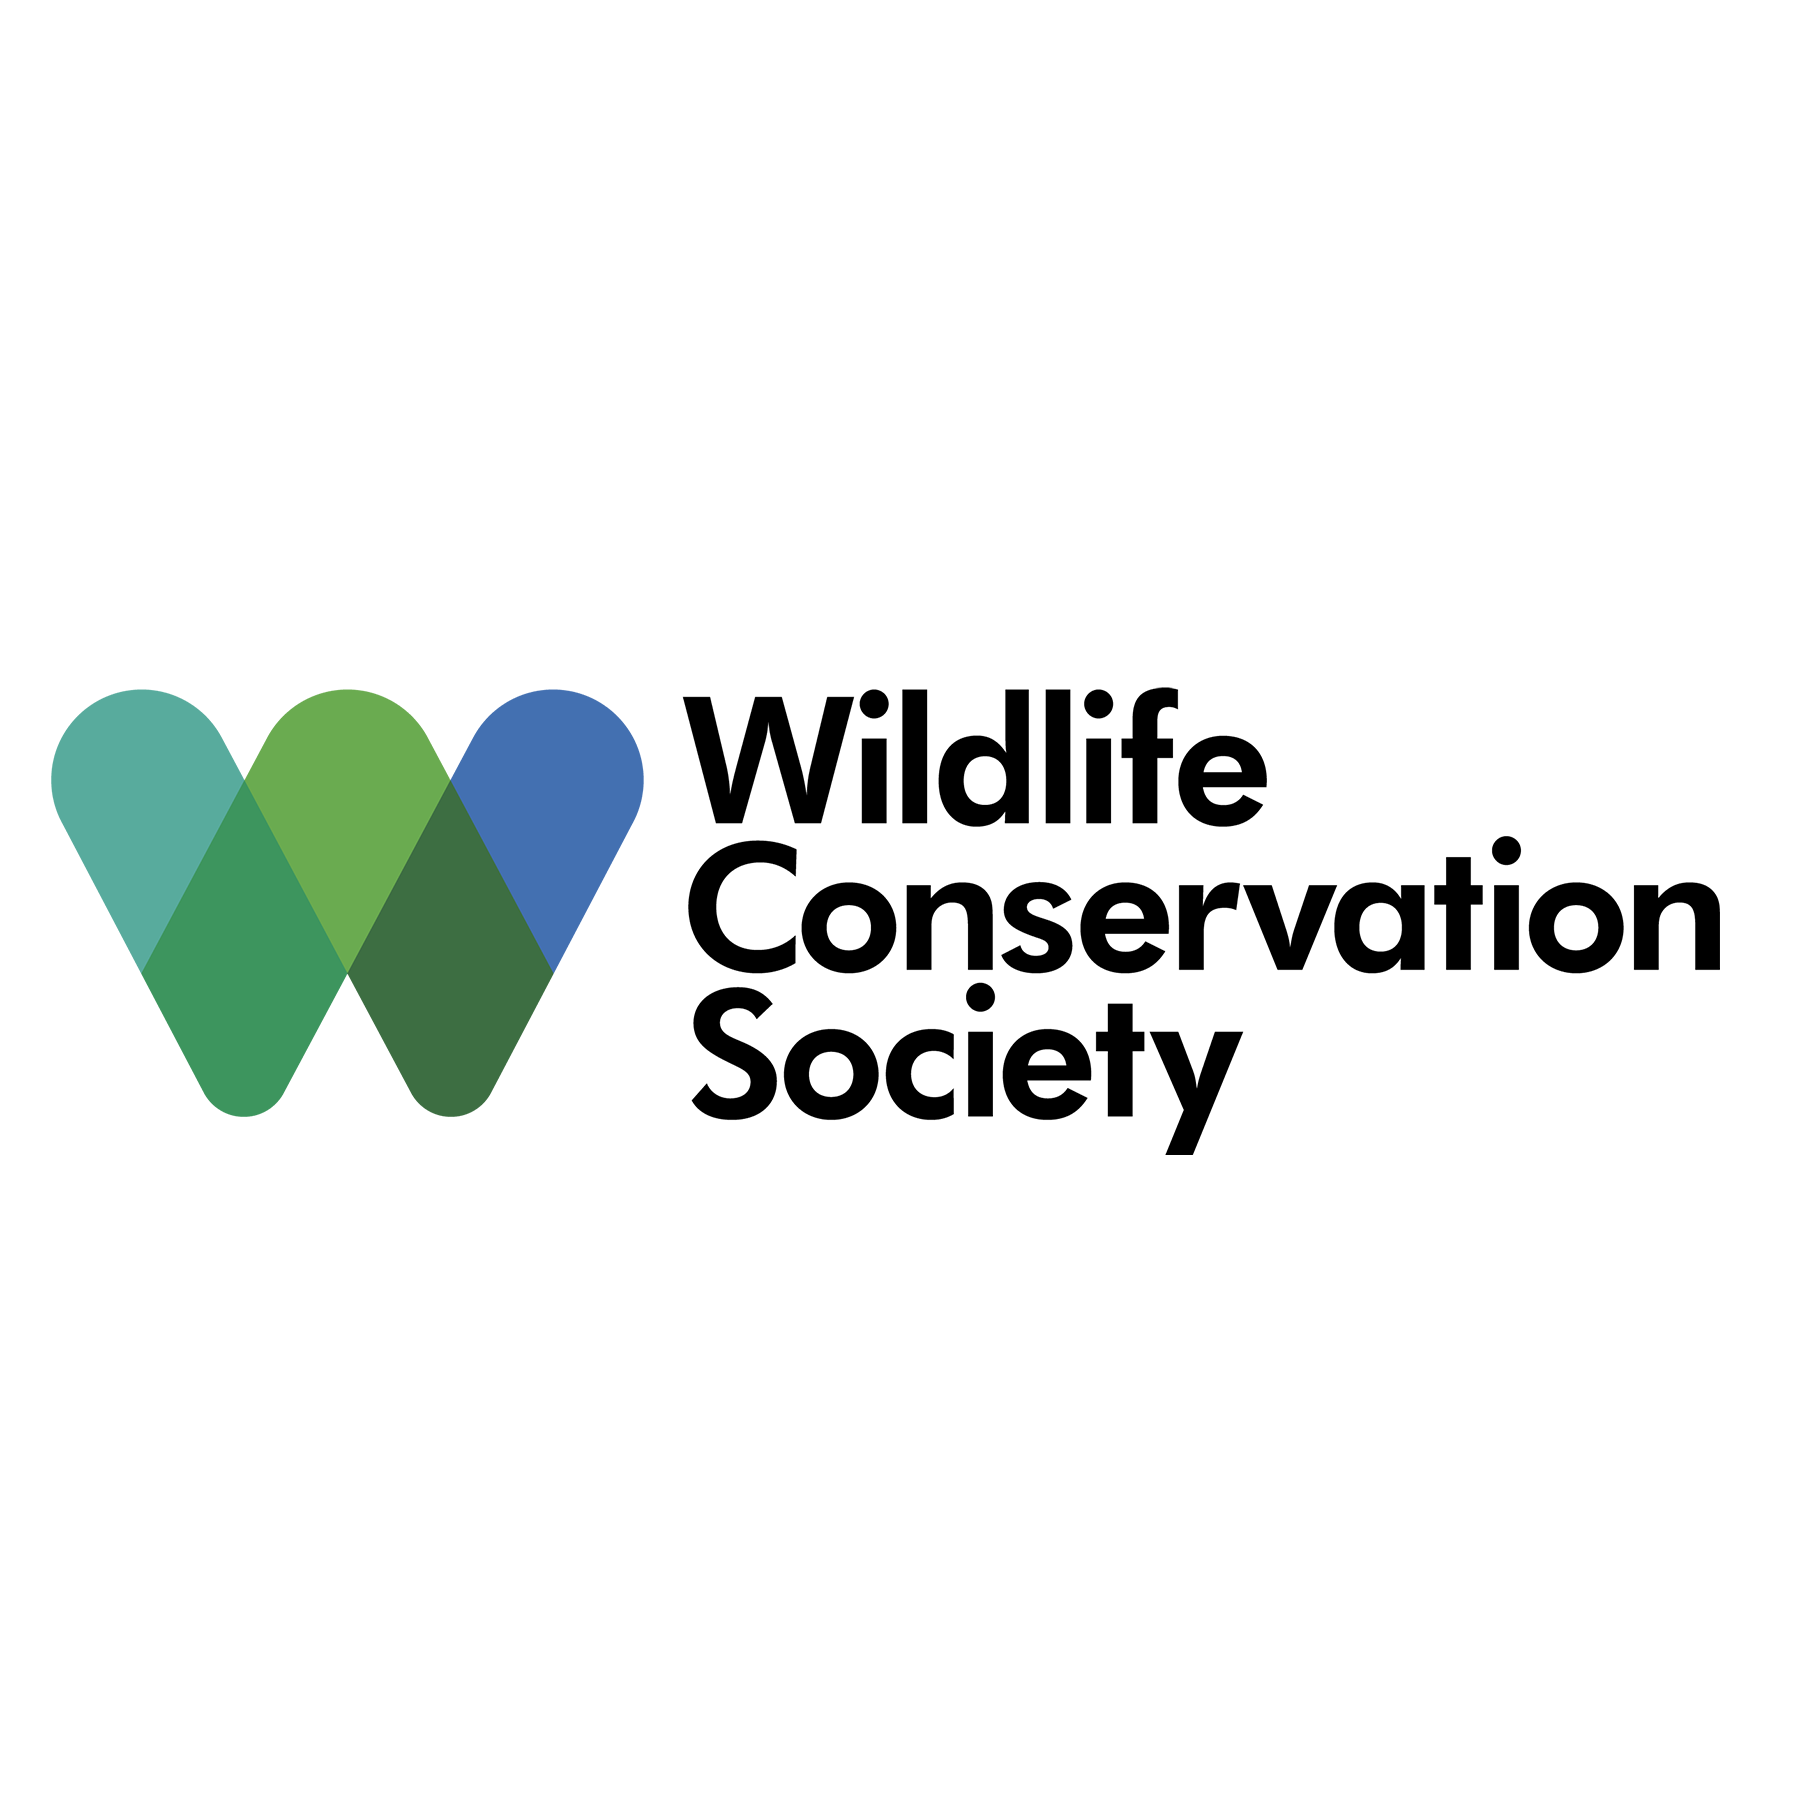 Wildlife conservation. Wildlife Conservation Society. Цшдвдшау сщтмукыфешщт ыщсшнен. WCS logo. Wildlife лого.